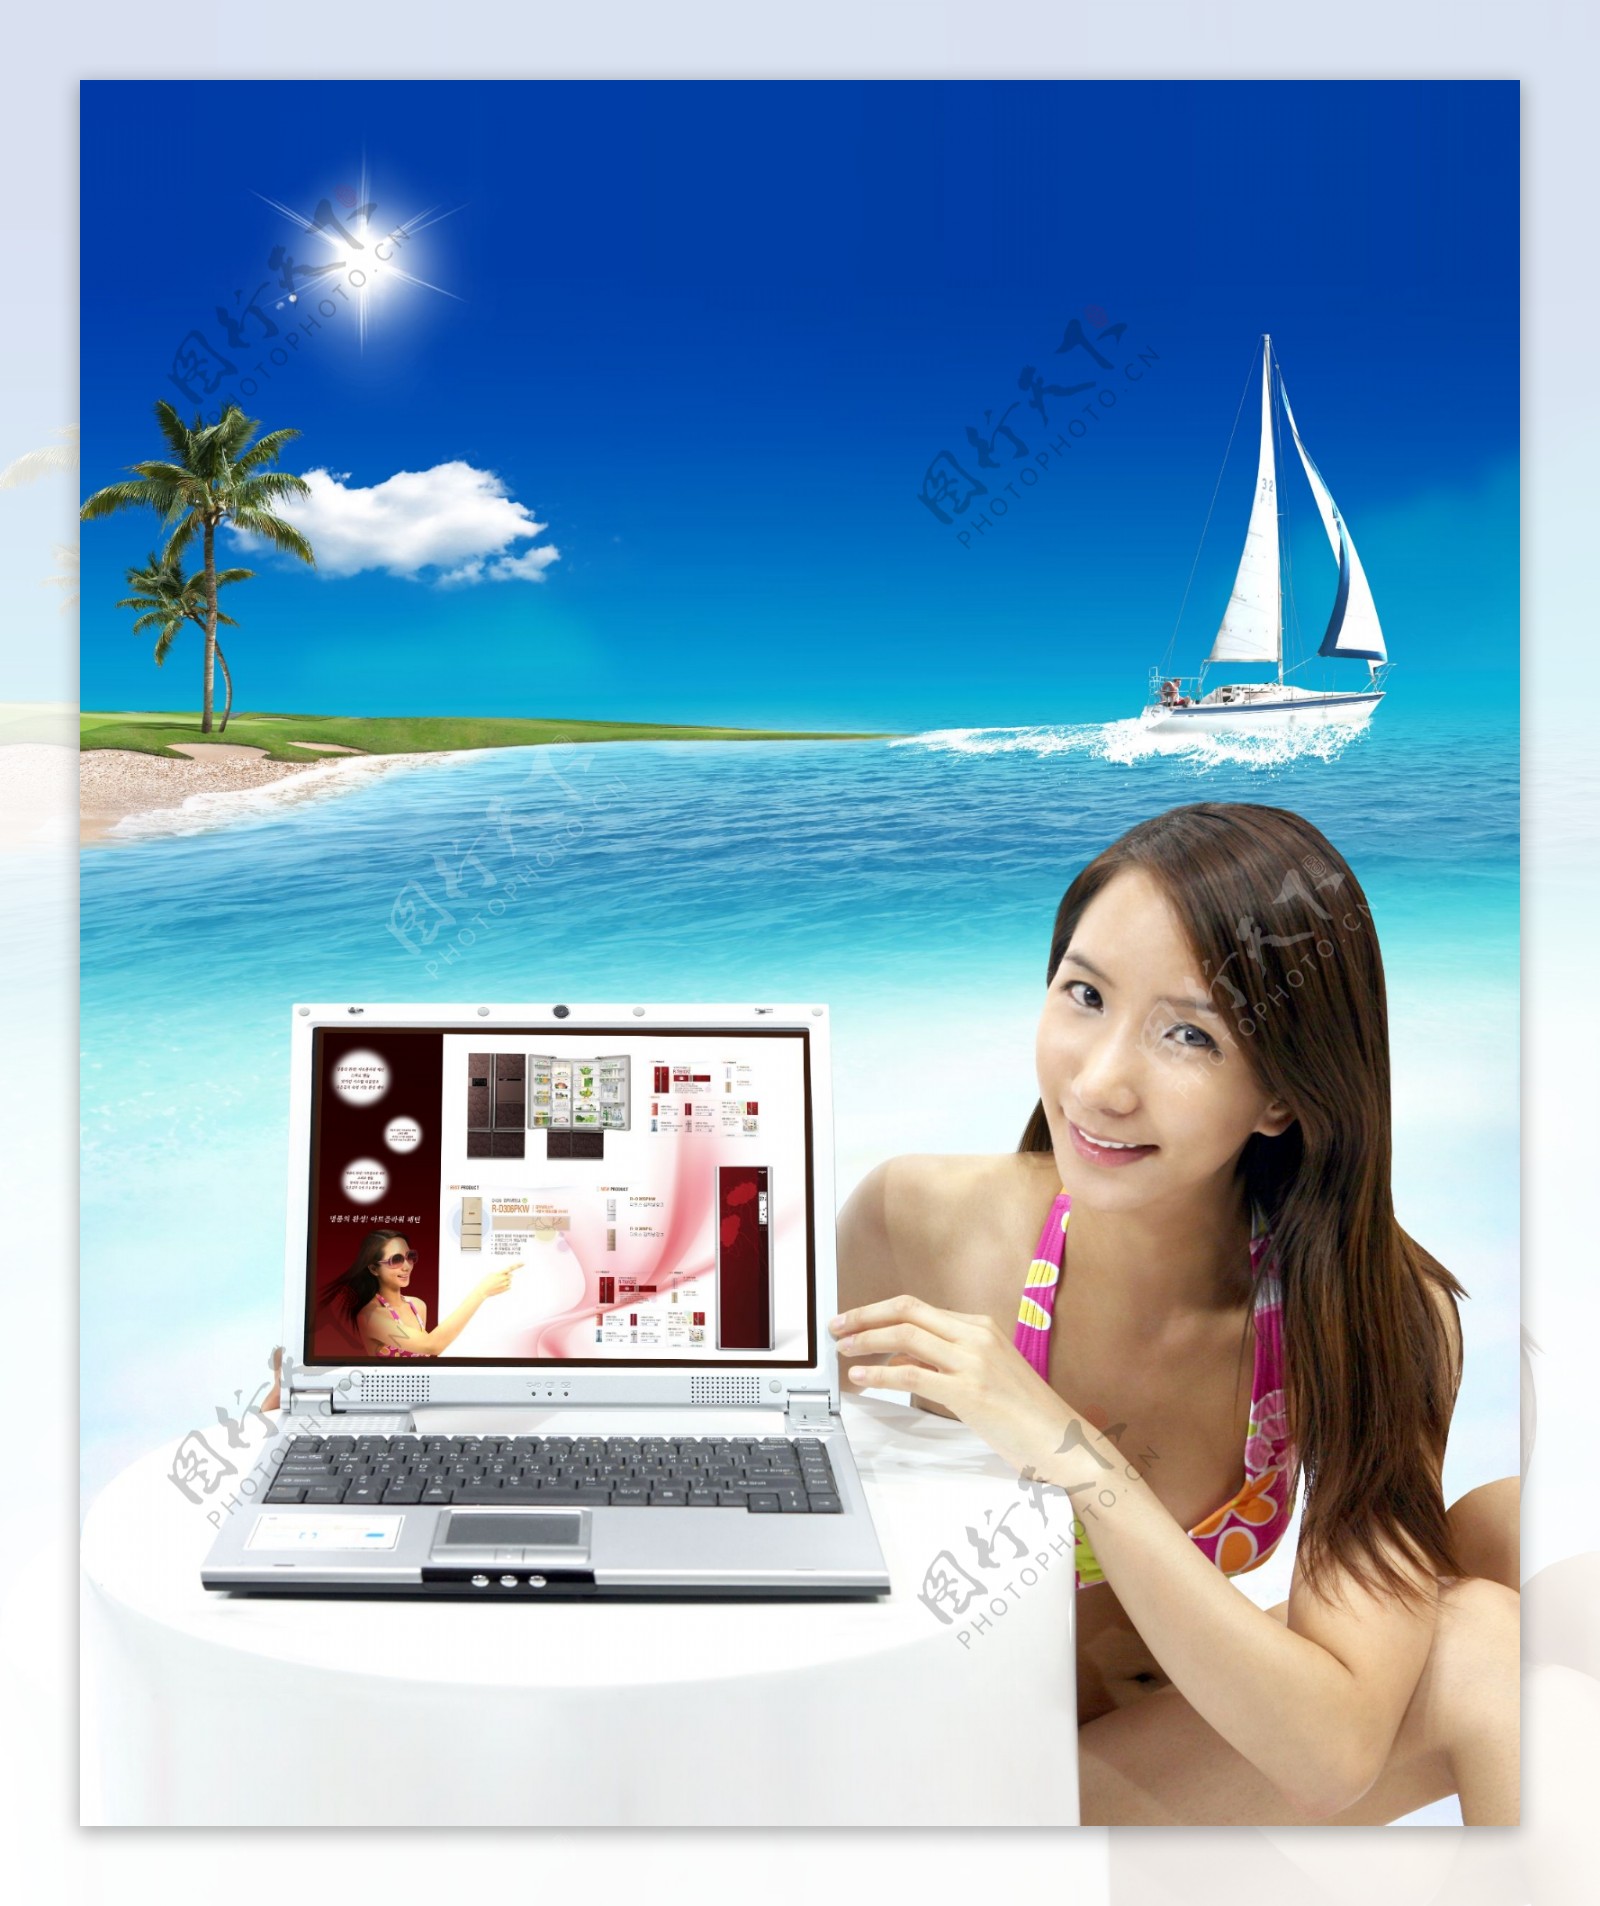 海边沙滩泳衣女人度假帆船蓝天白云电脑笔记本手提影骑韩国实用设计分层源文件PSD源文件